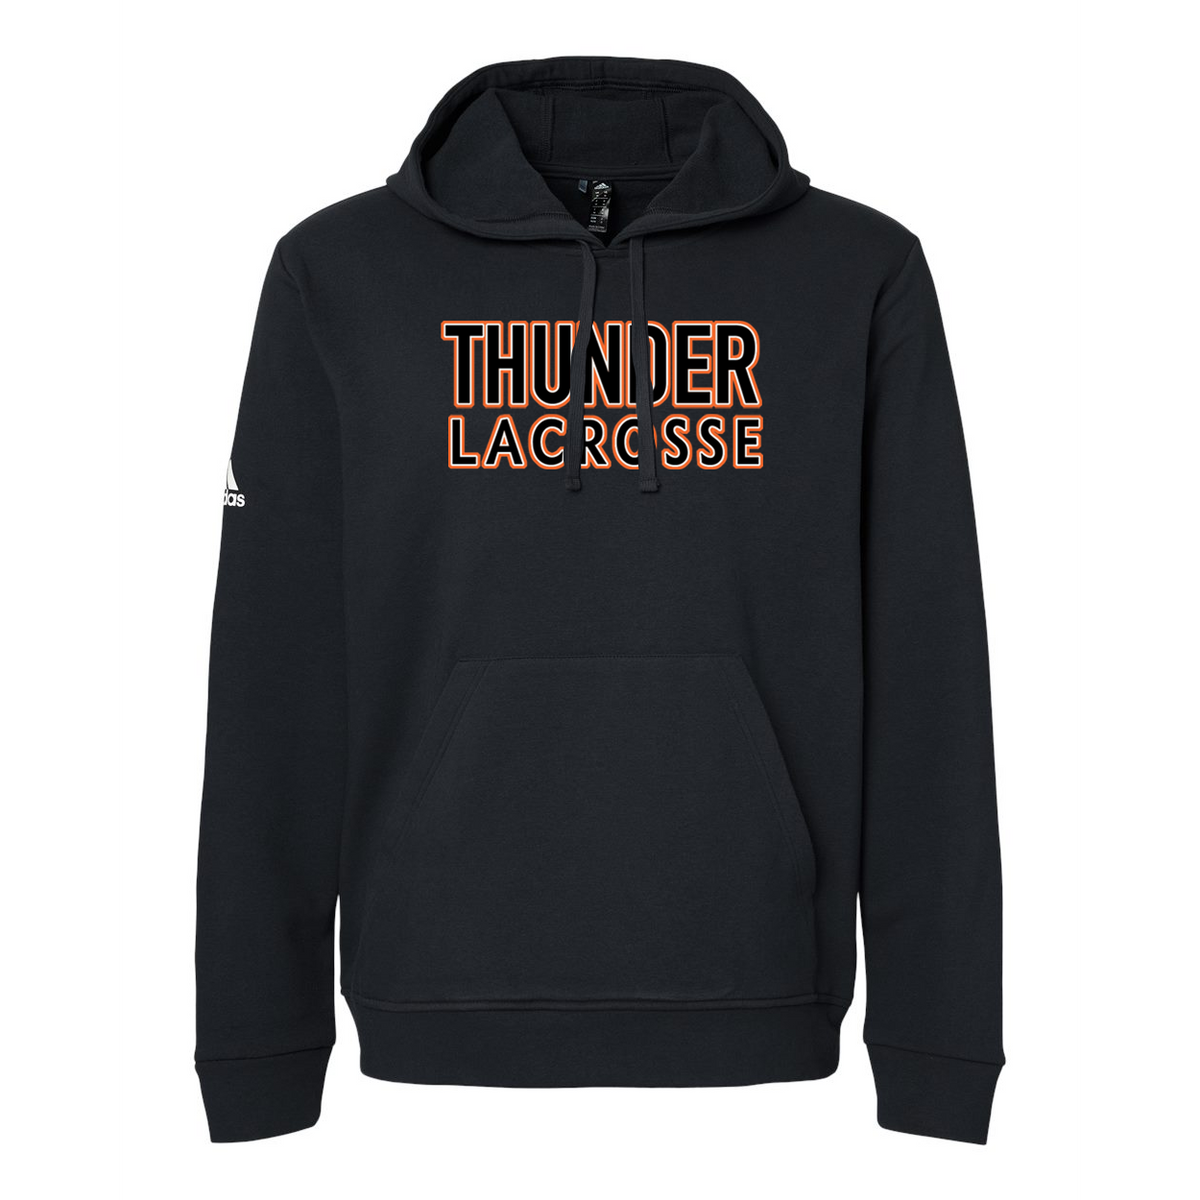 Jersey Thunder Lacrosse Adidas Fleece Hooded Sweatshirt